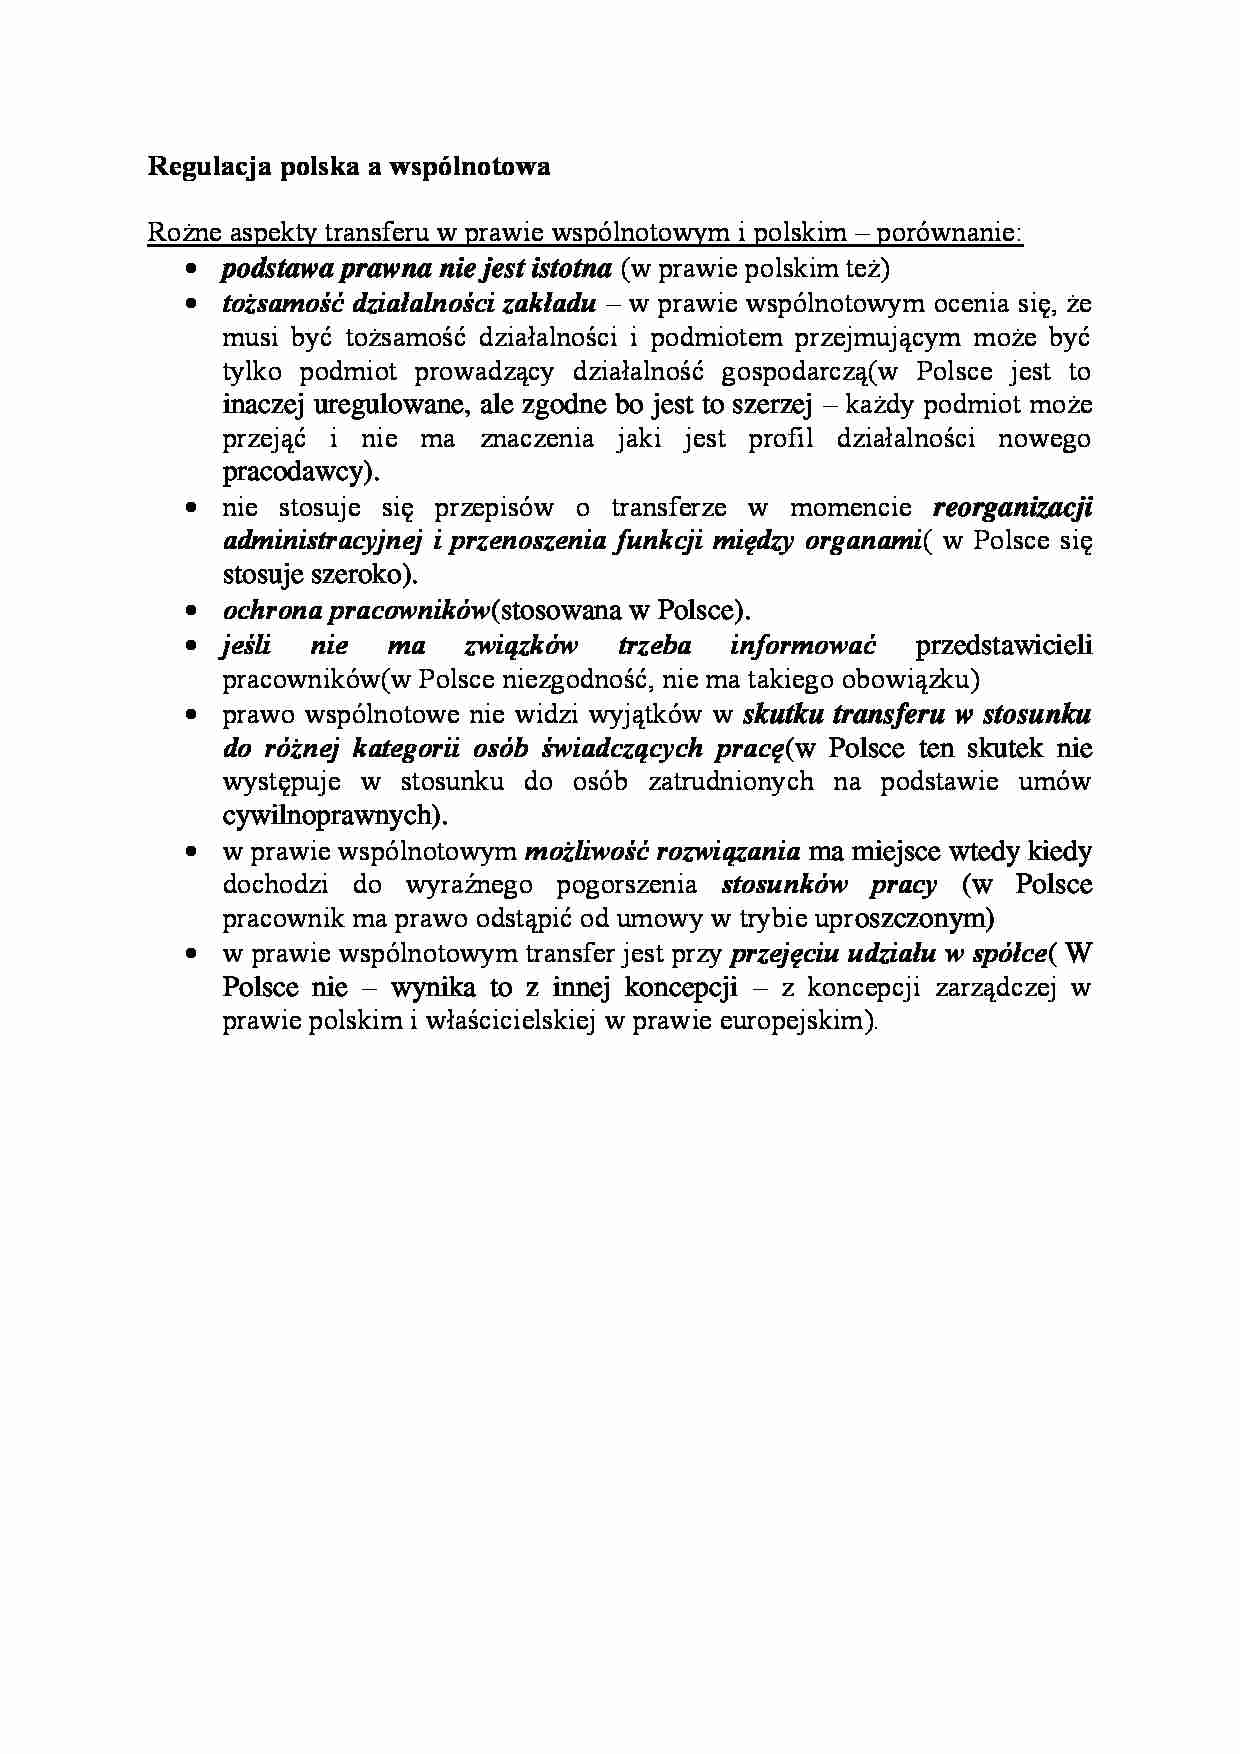 Regulacja polska a wspólnotowa - strona 1